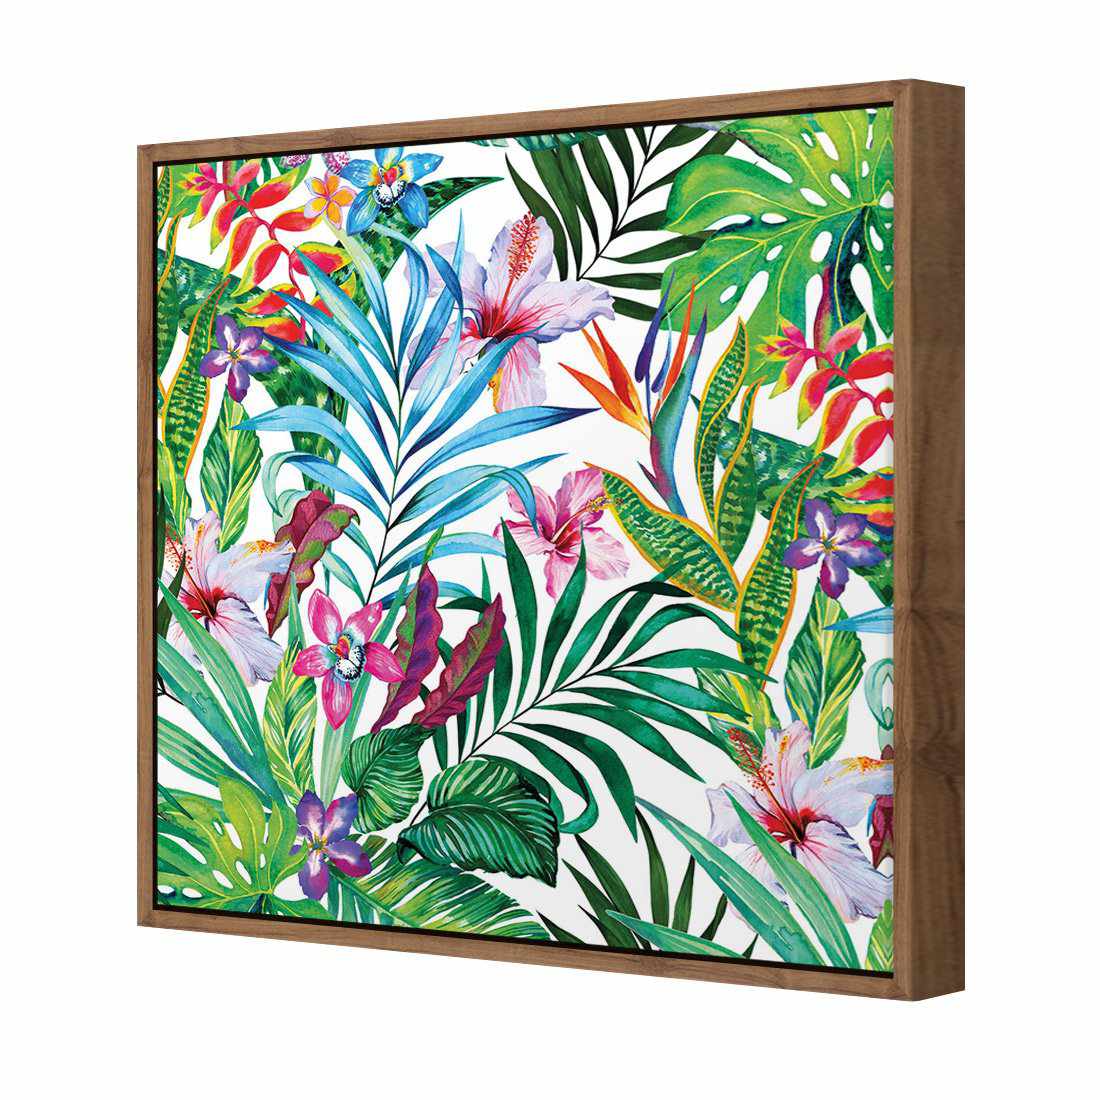 Jungle At Noon Canvas Art-Canvas-Wall Art Designs-30x30cm-Canvas - Natural Frame-Wall Art Designs